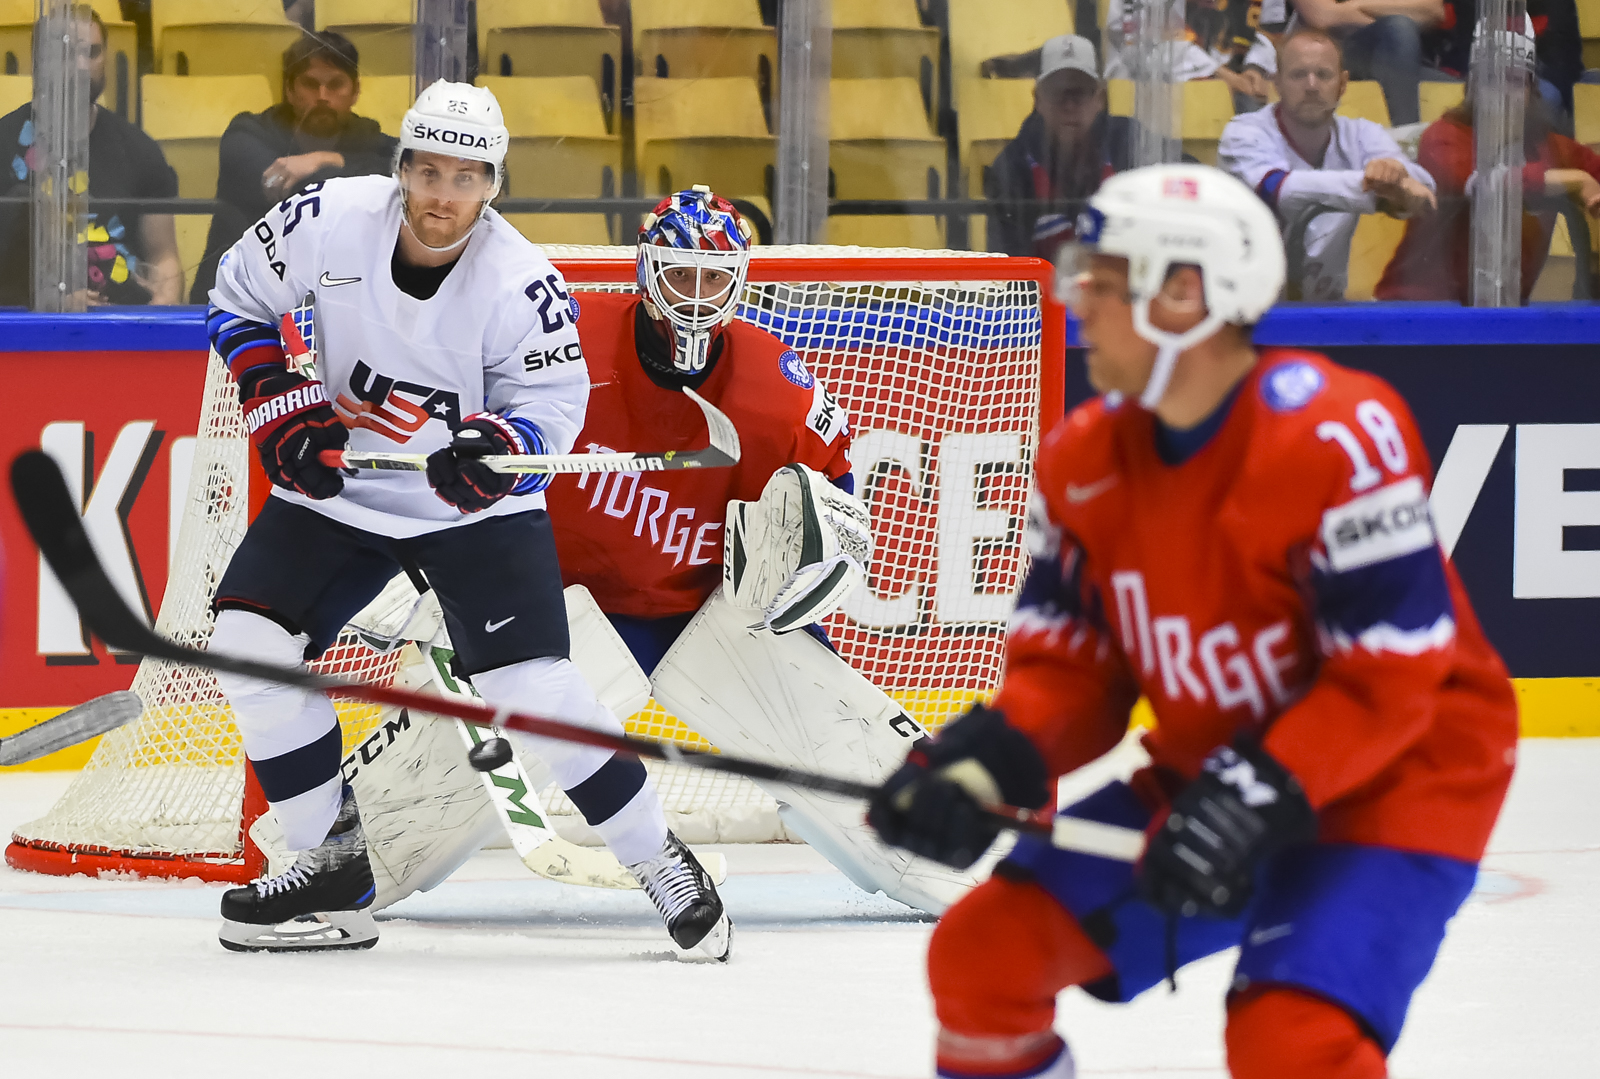 IIHF - Gallery: Norway vs. USA